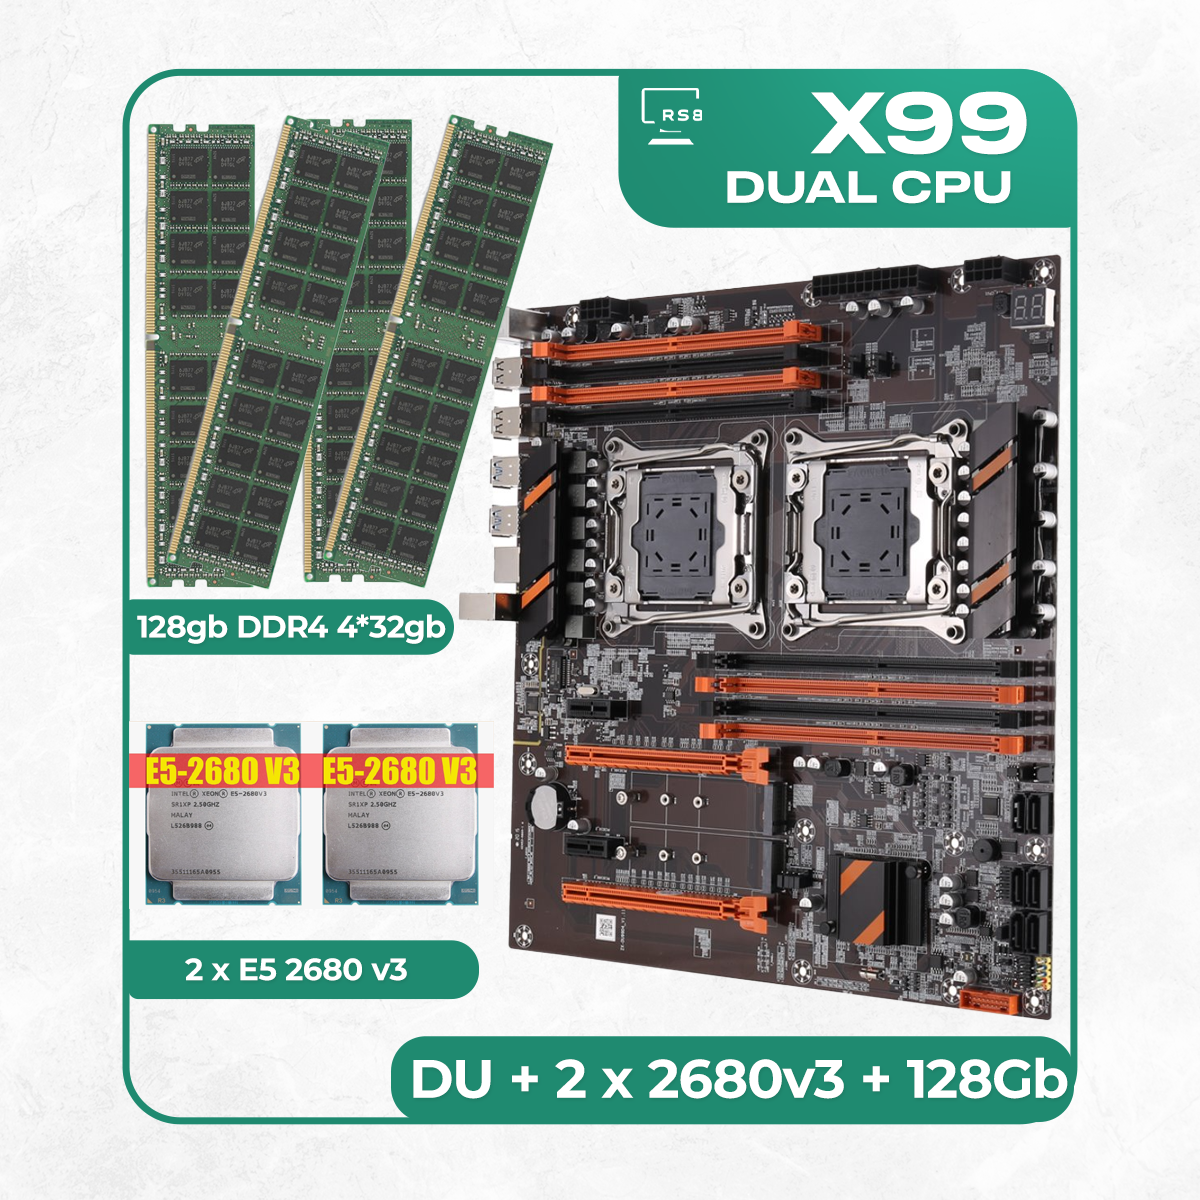 Комплект материнской платы X99: ZX-DU99D4 + 2 x Xeon E5 2680v3 + DDR4 128Гб 4х32Гб